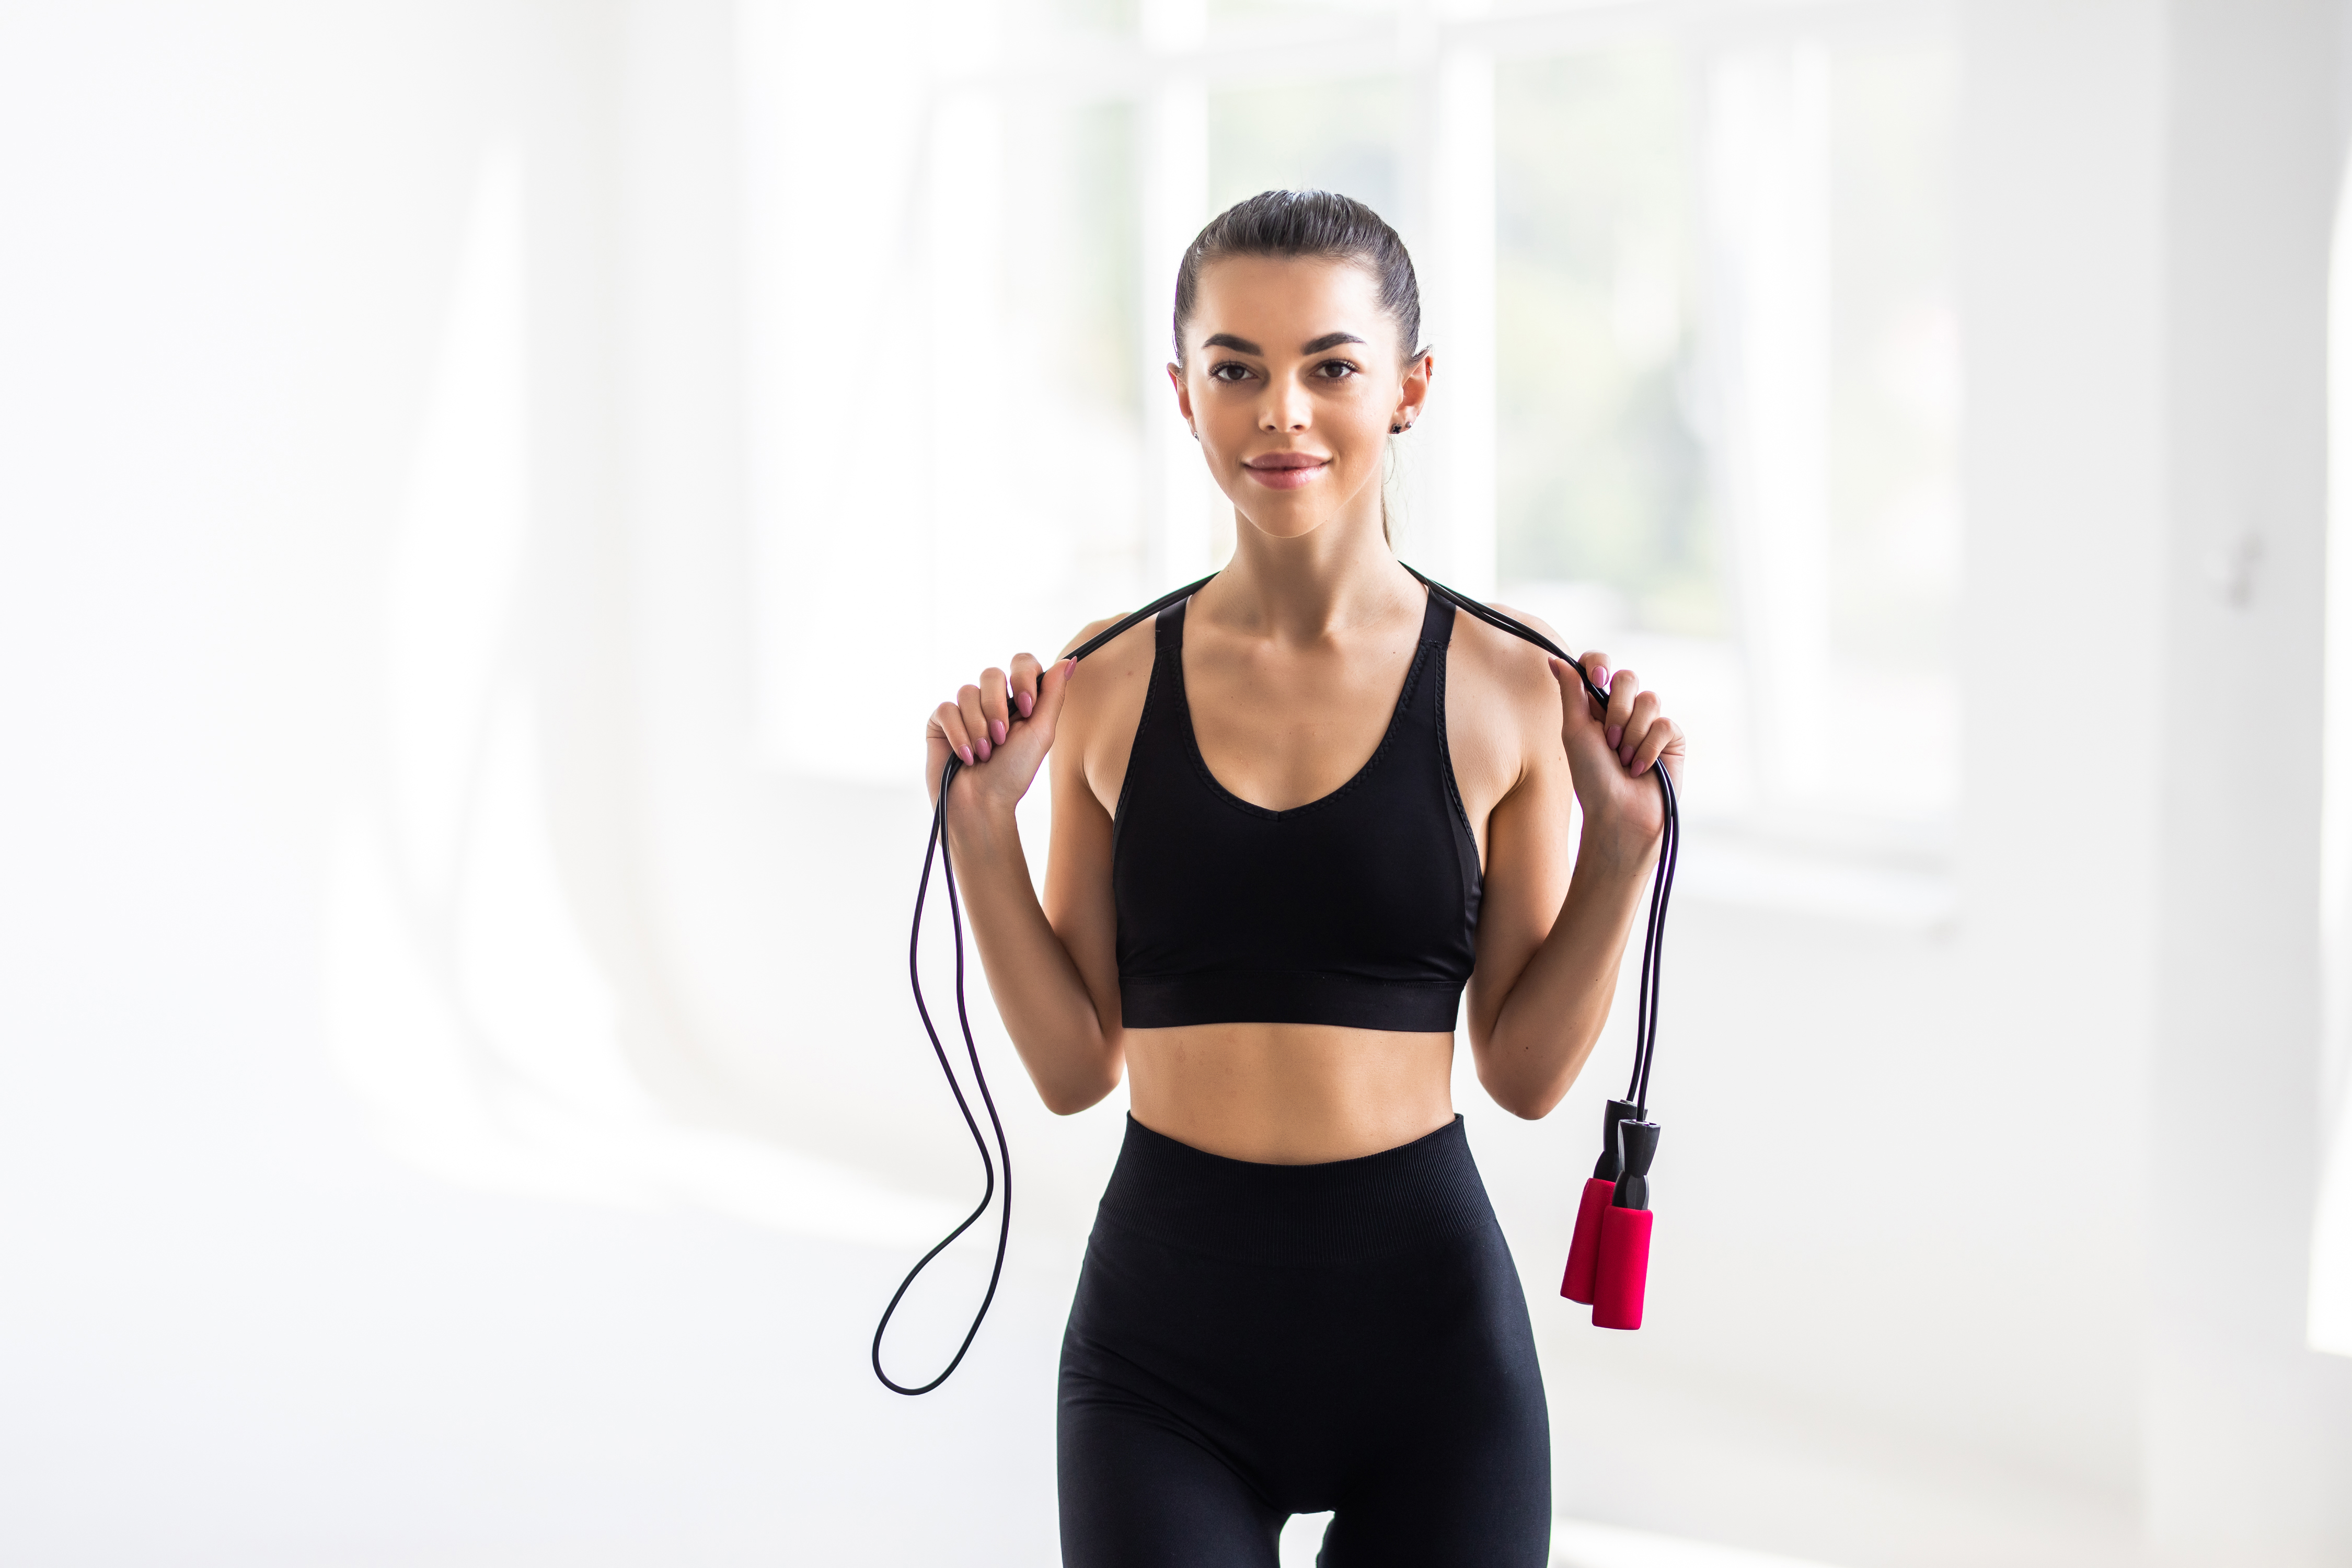 Pular corda é exercício que vale um treino inteiro; veja benefícios